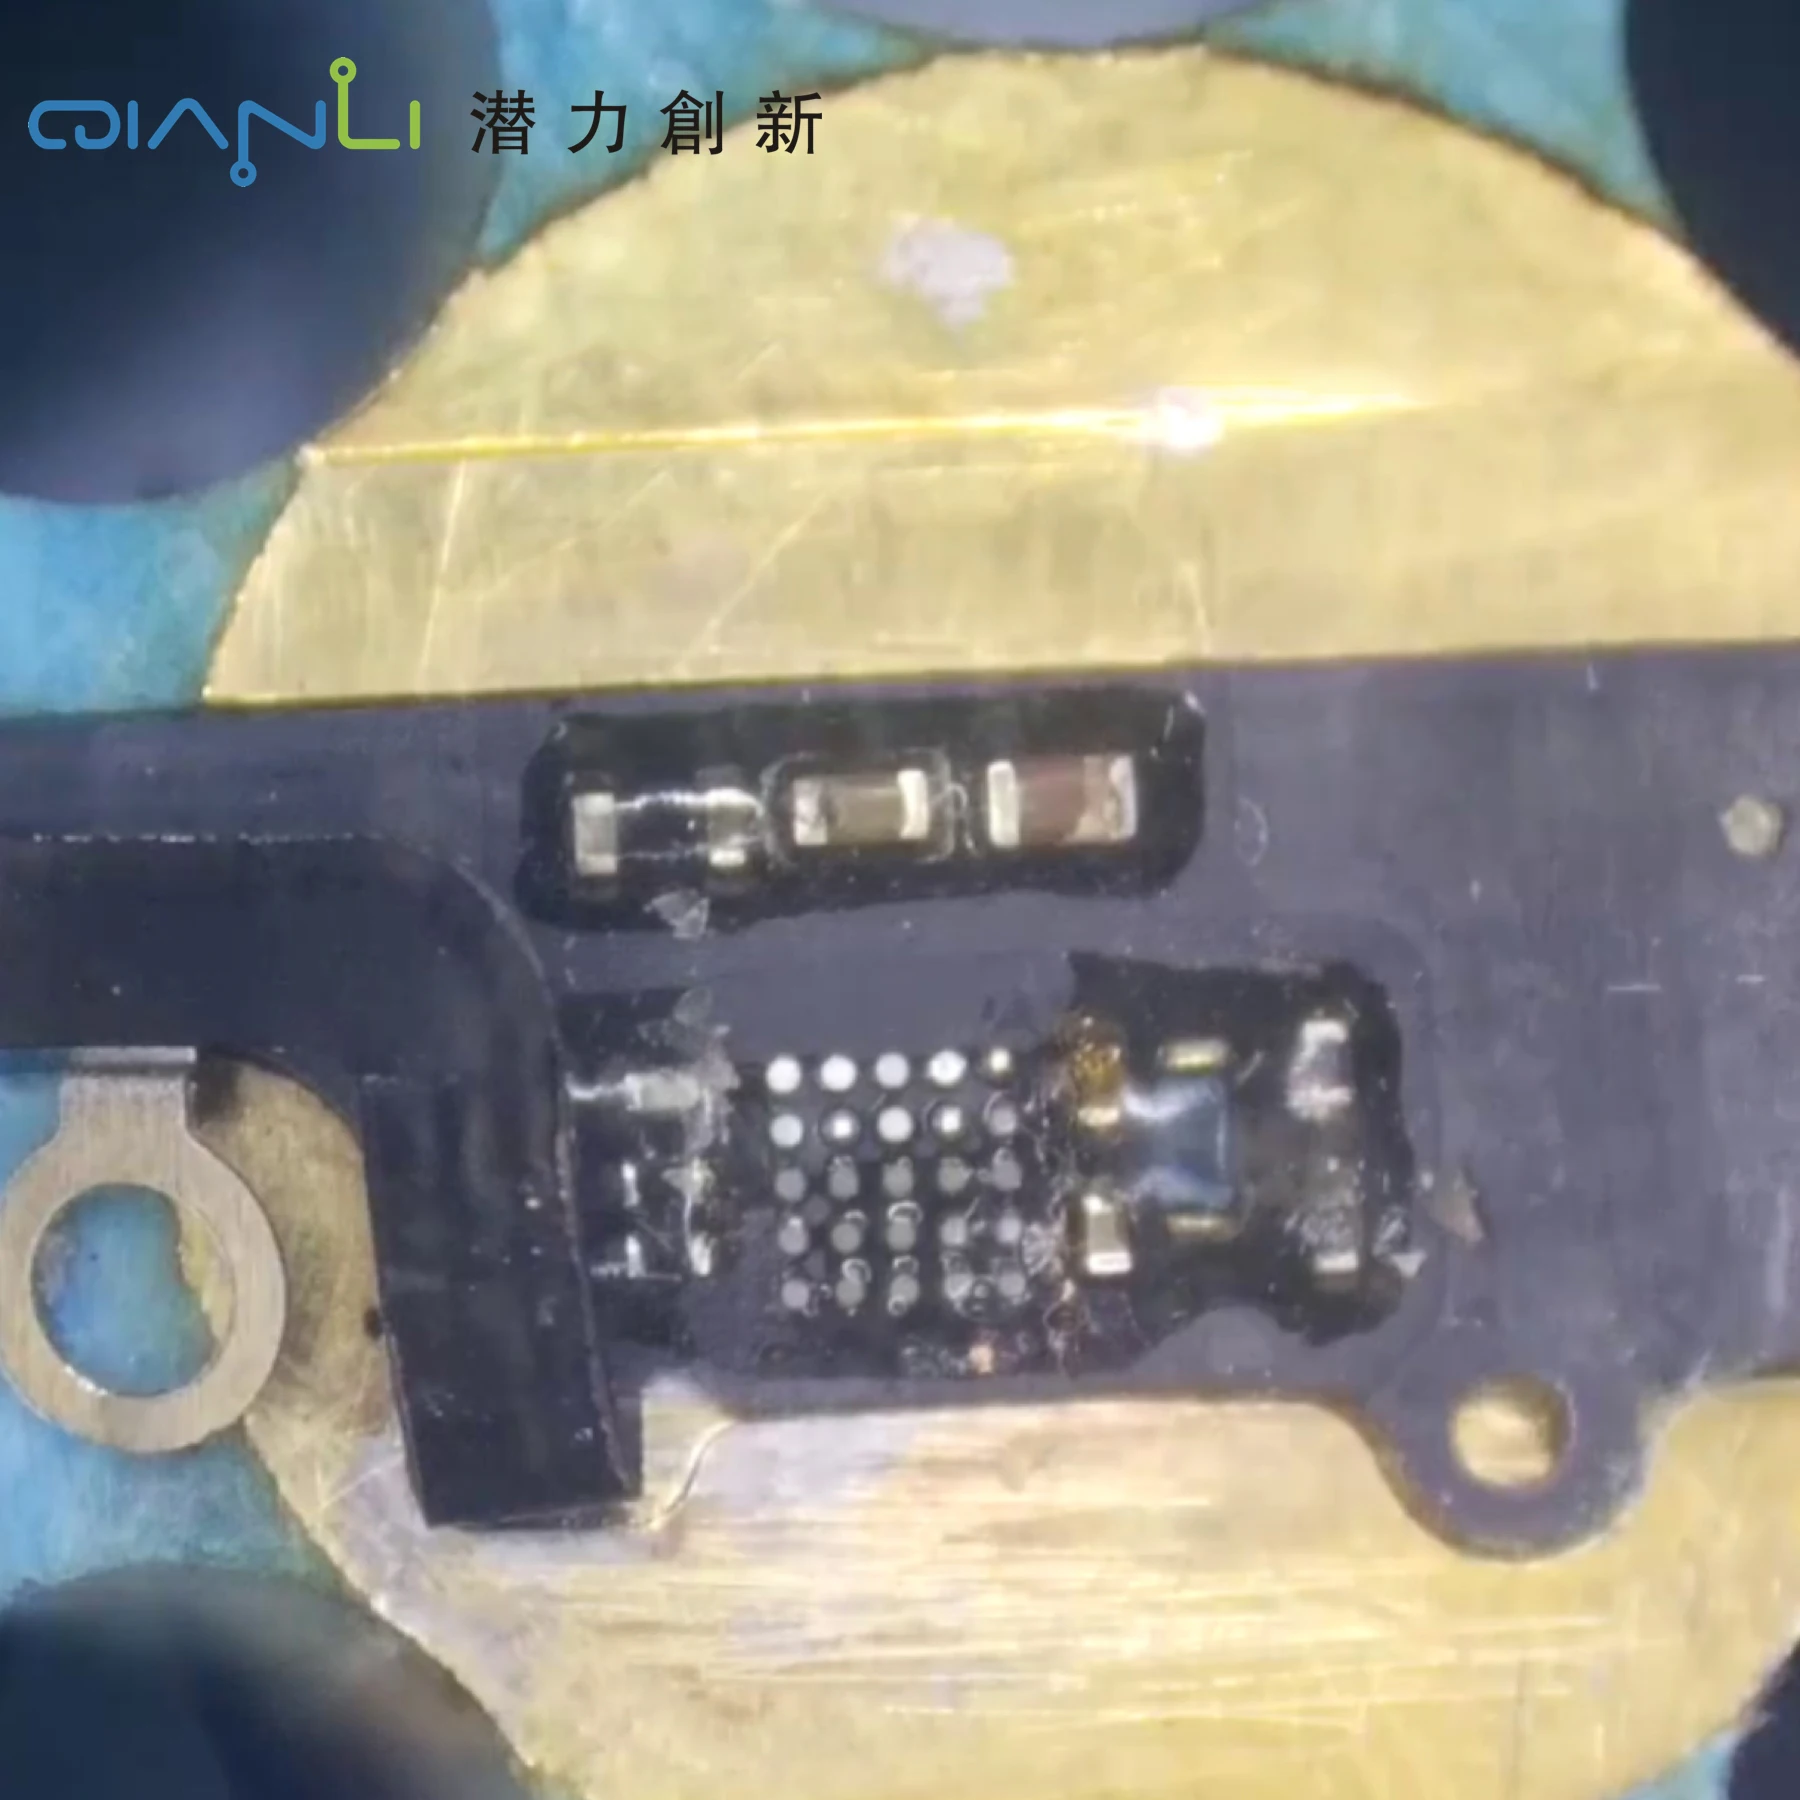 QIANLI iPhone7/7 P сканер отпечатков пальцев ремонт верстак U10 отпечатков пальцев ремонтный чип